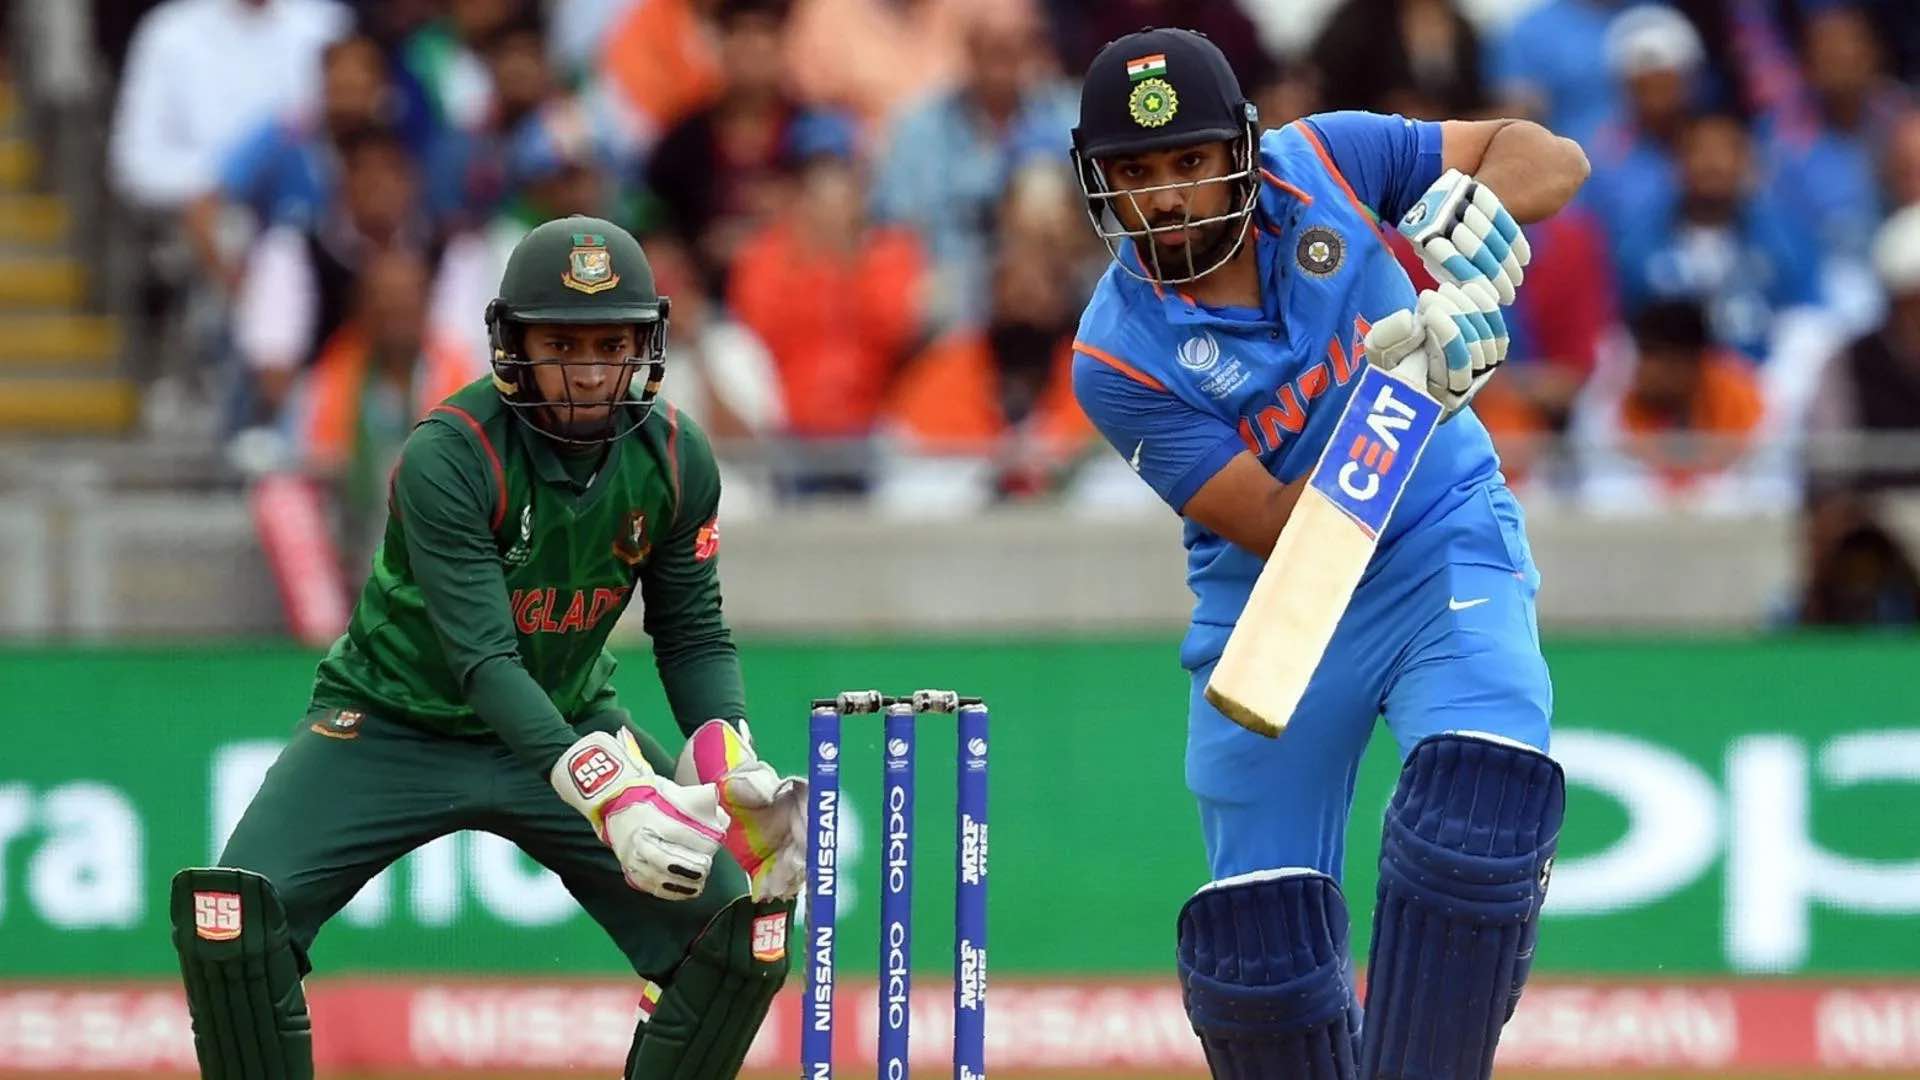 India vs Bangladesh ODI Records and Stats at the Shere Bangla National